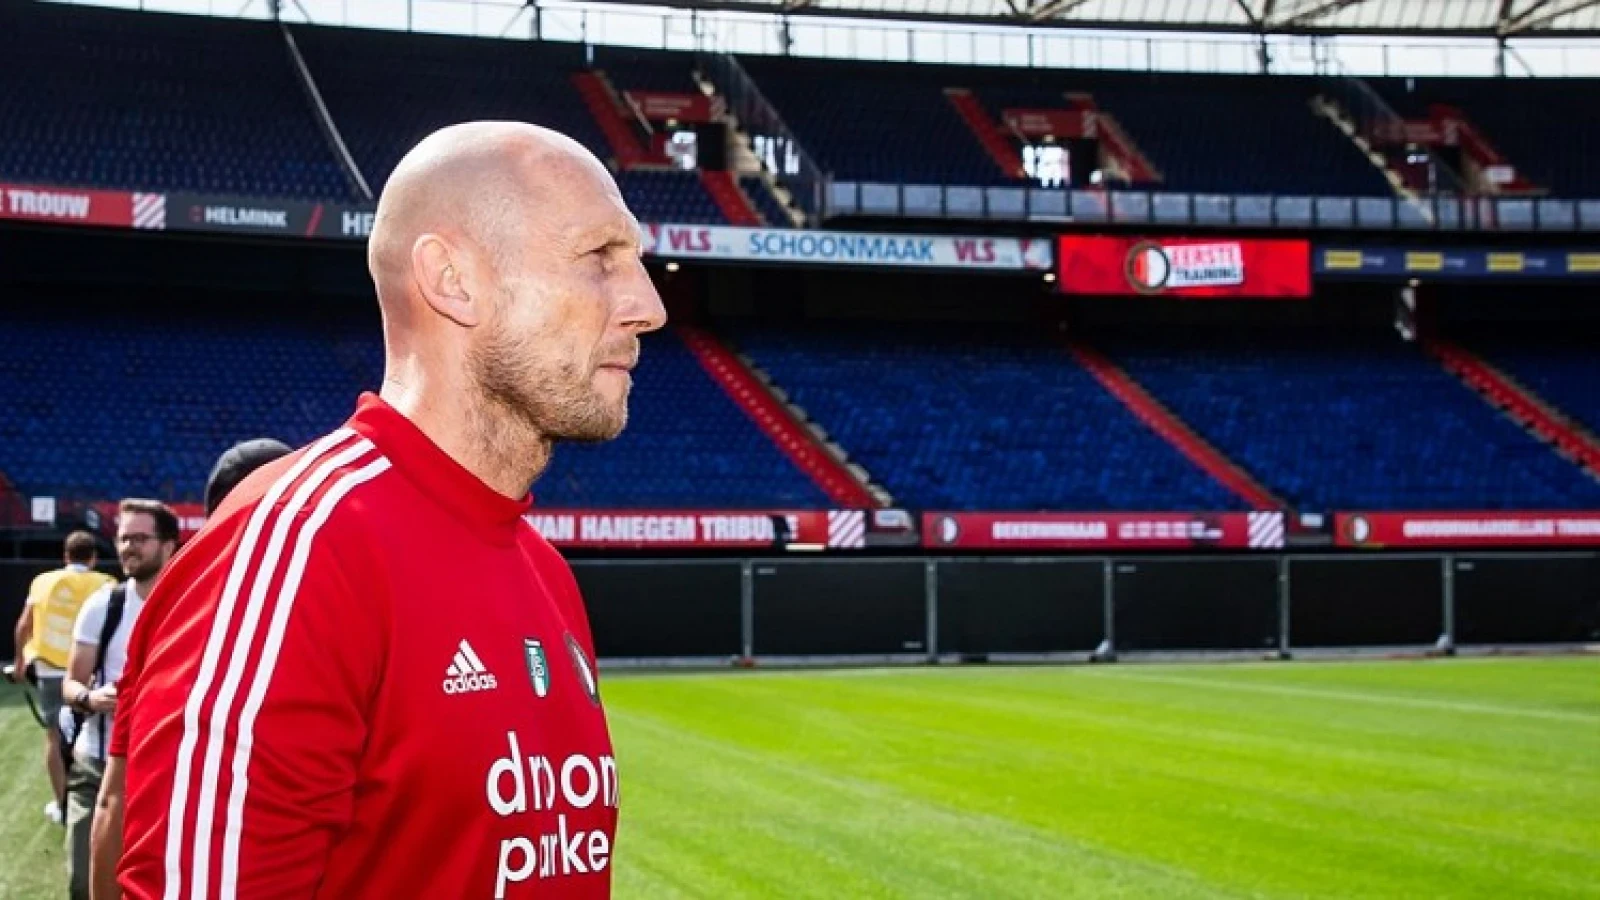 Stam gecharmeerd van middenvelder: 'Hij kan van hele grote waarde zijn voor Feyenoord'